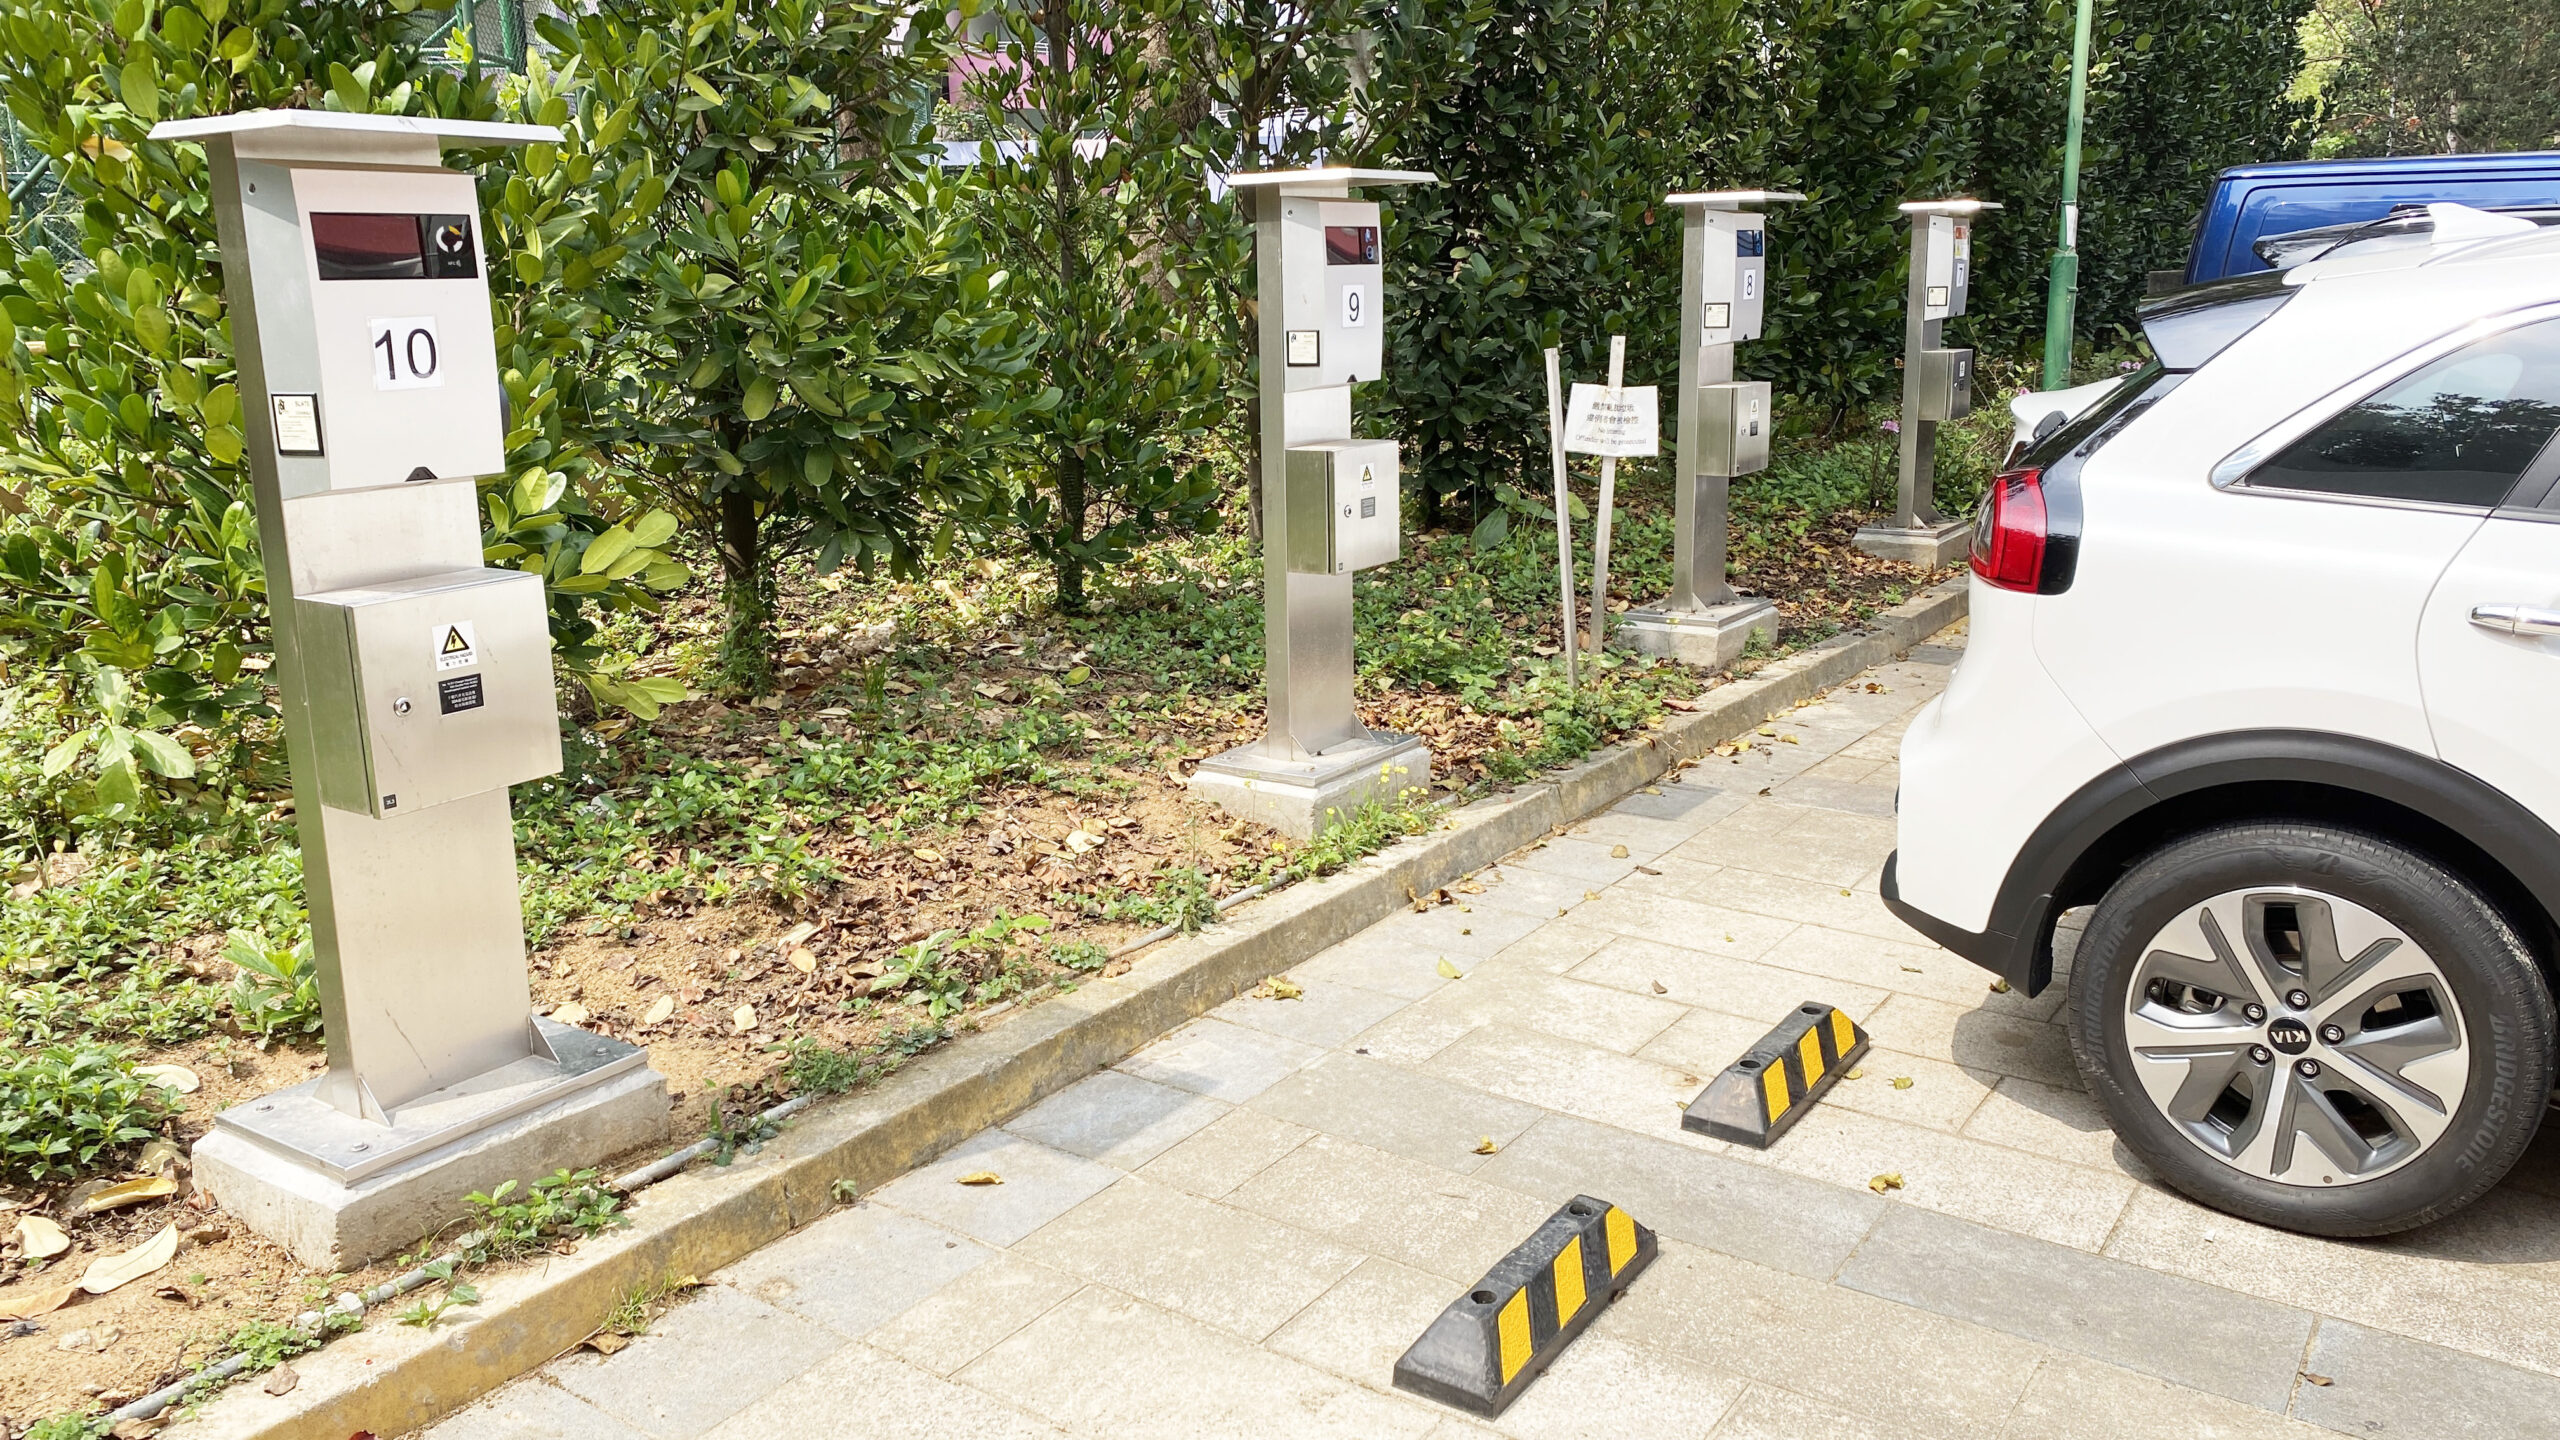 HK01 – 配合電動車普及化 機構增設400個充電站 覆蓋4類地方